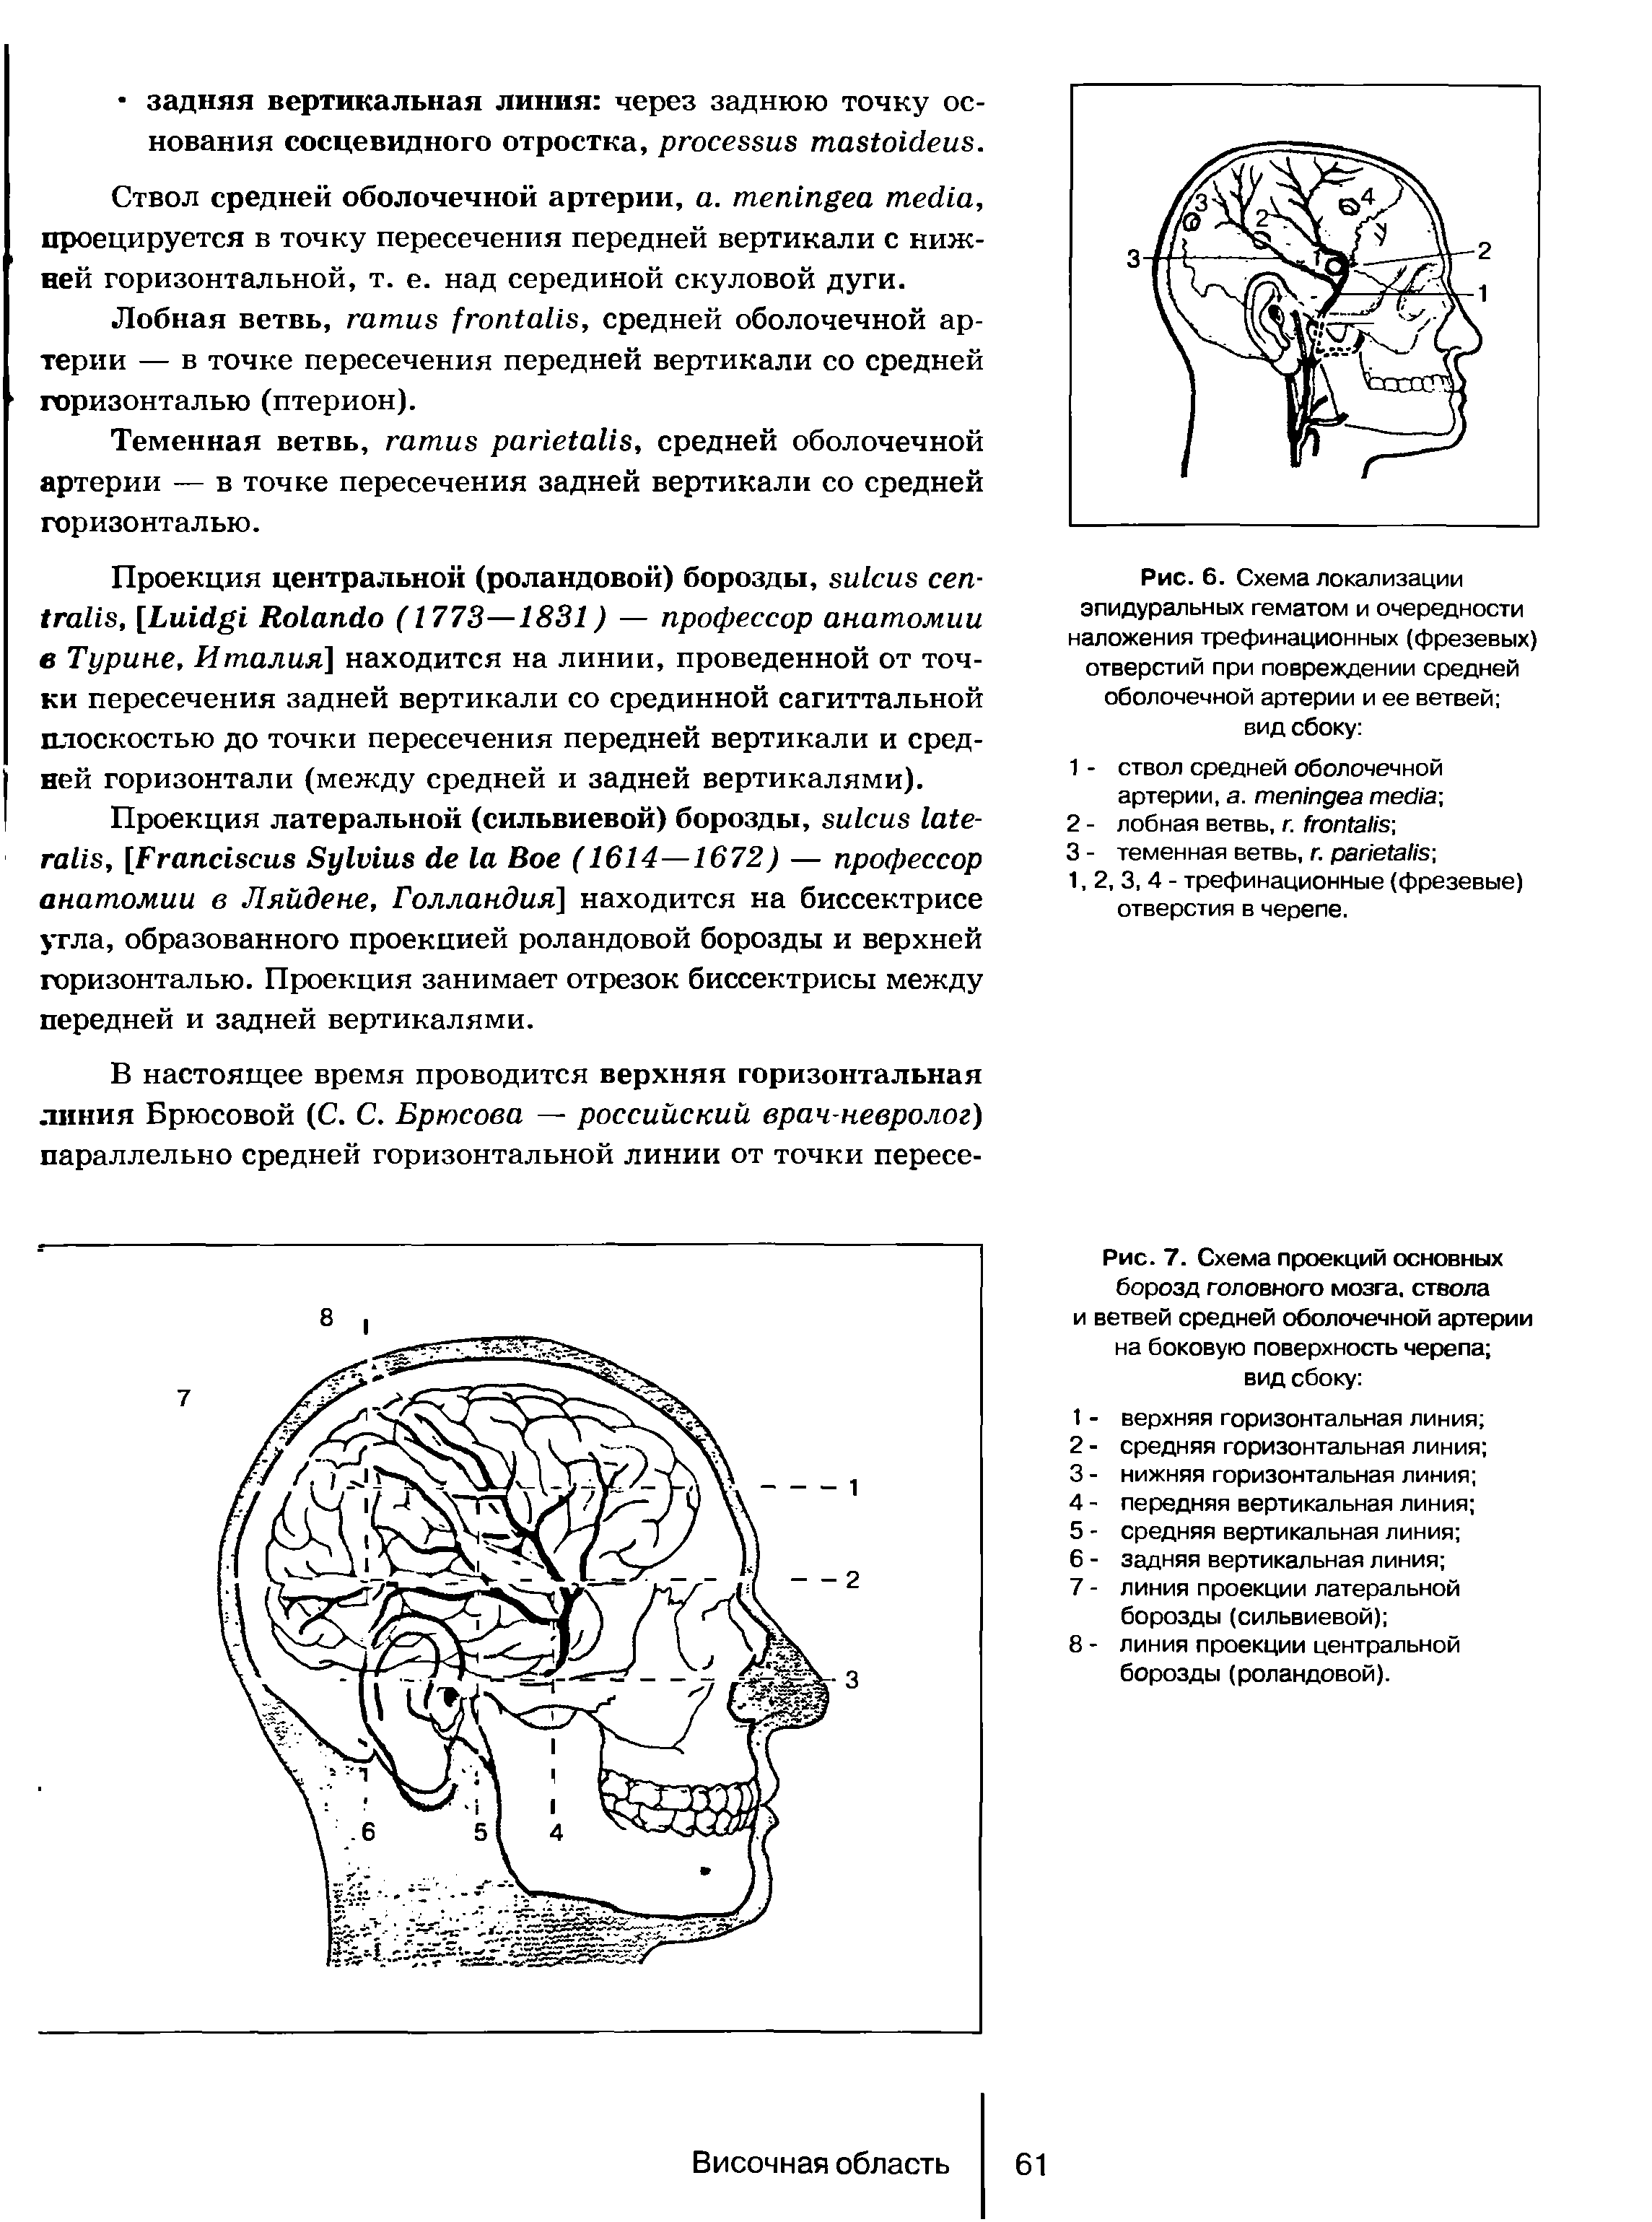 Рис. 7. Схема проекций основных борозд головного мозга, ствола и ветвей средней оболочечной артерии на боковую поверхность черепа вид сбоку ...